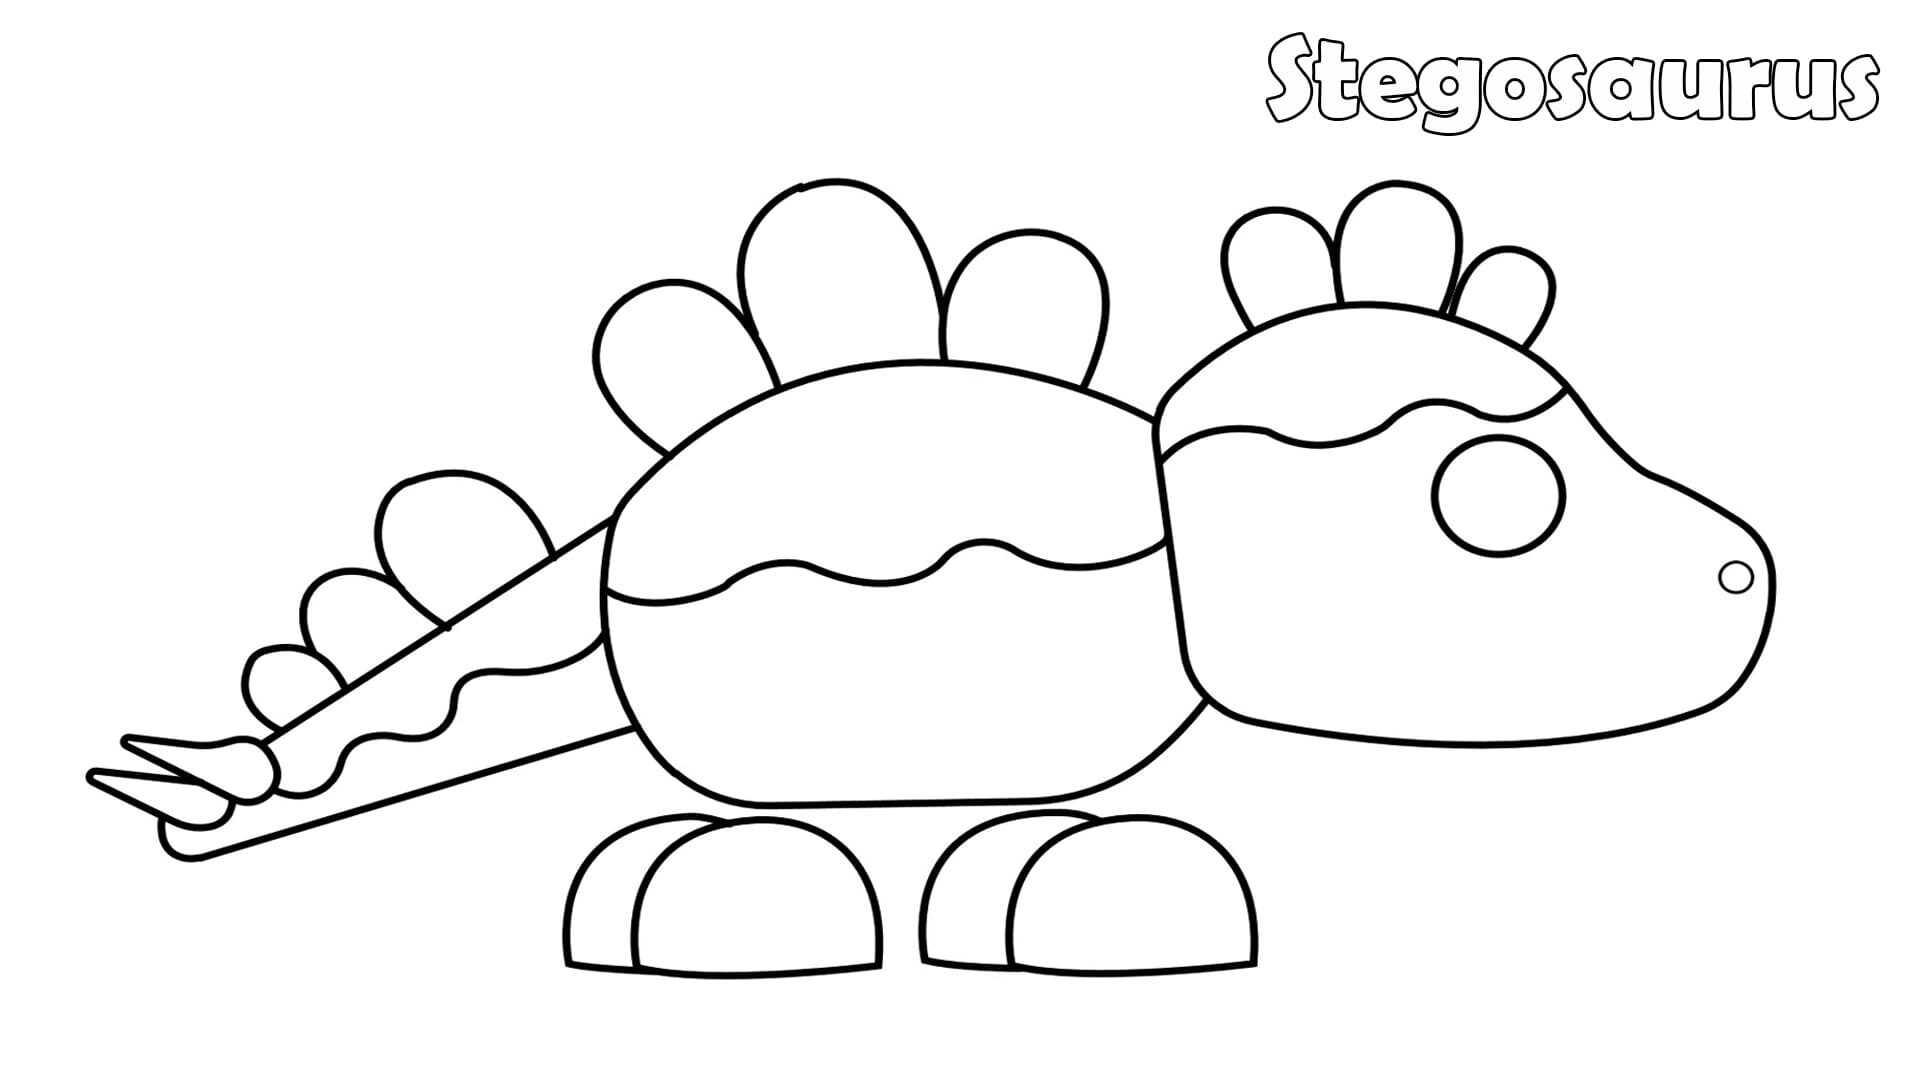 Der Stegosaurus hat abgerundete Platten entlang seines Kopfes, seines Rückens und Stacheln an seinem Schwanz in Adopt me von Adopt me